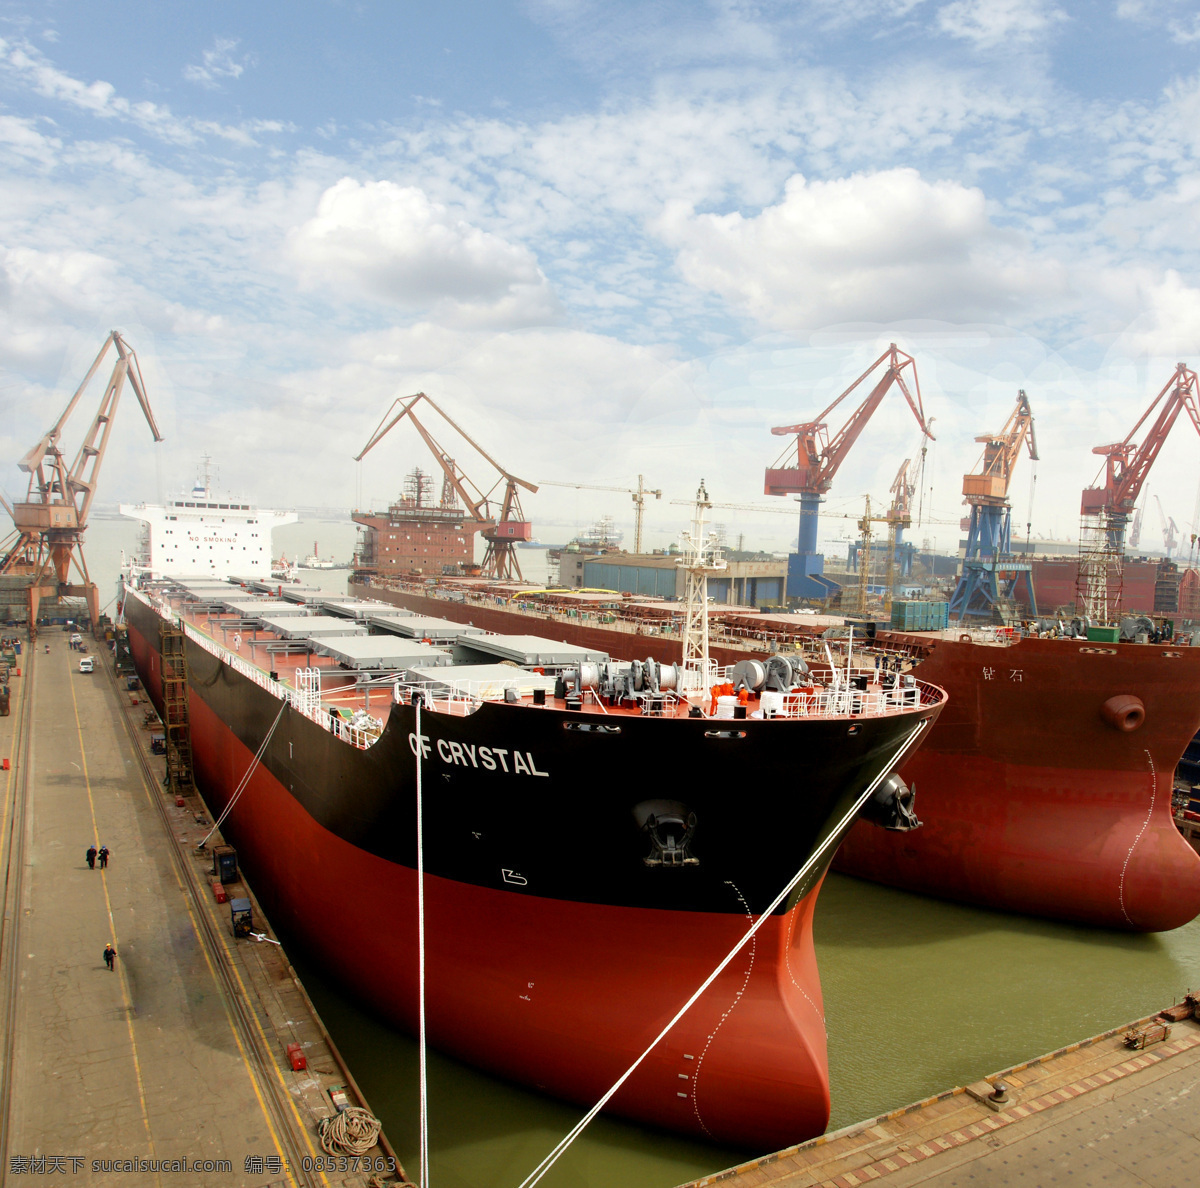 船厂 货船 货轮 轮船 码头 海港 港湾 港口 吊车 吊机 船坞 造船厂 工厂 工业生产 现代科技